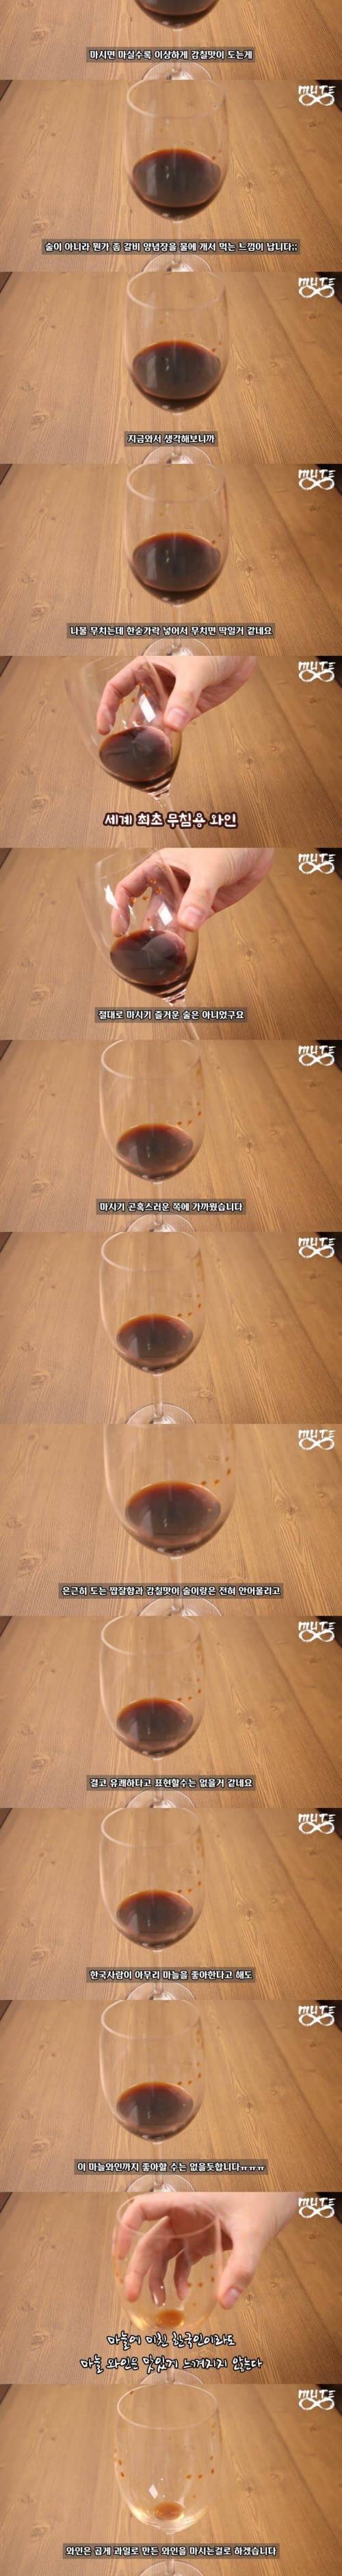 마늘로 와인 담가서 마셔보기.jpg